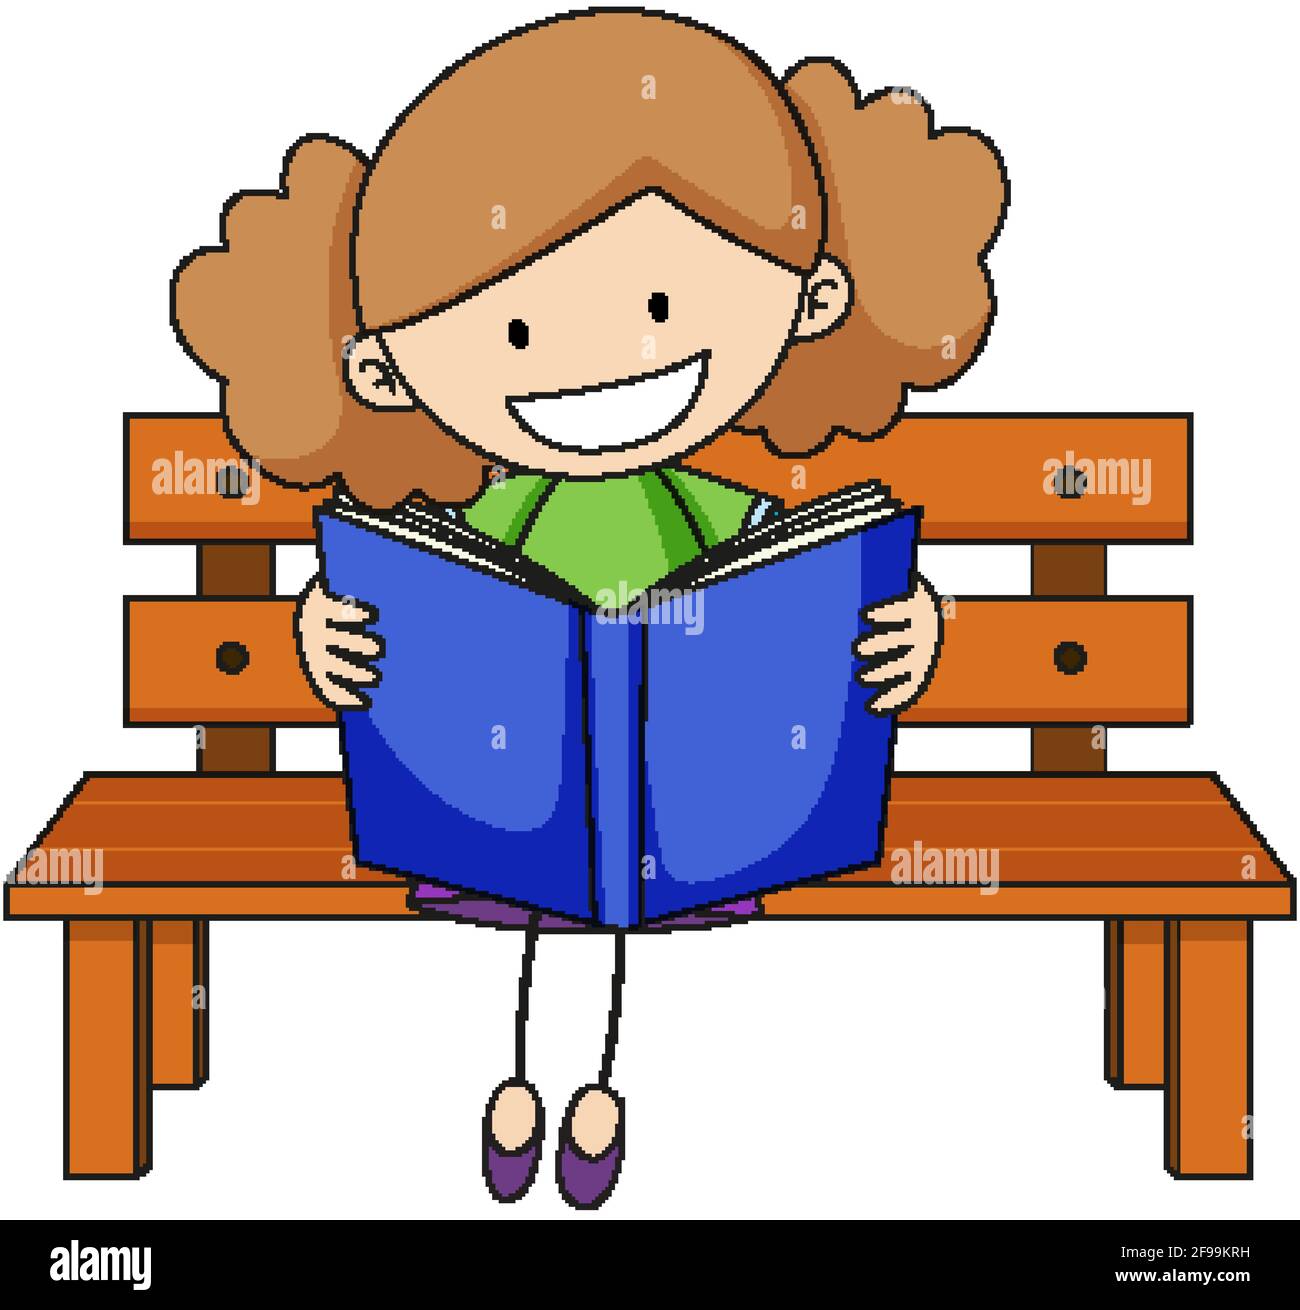 cute cartoon girl reading book